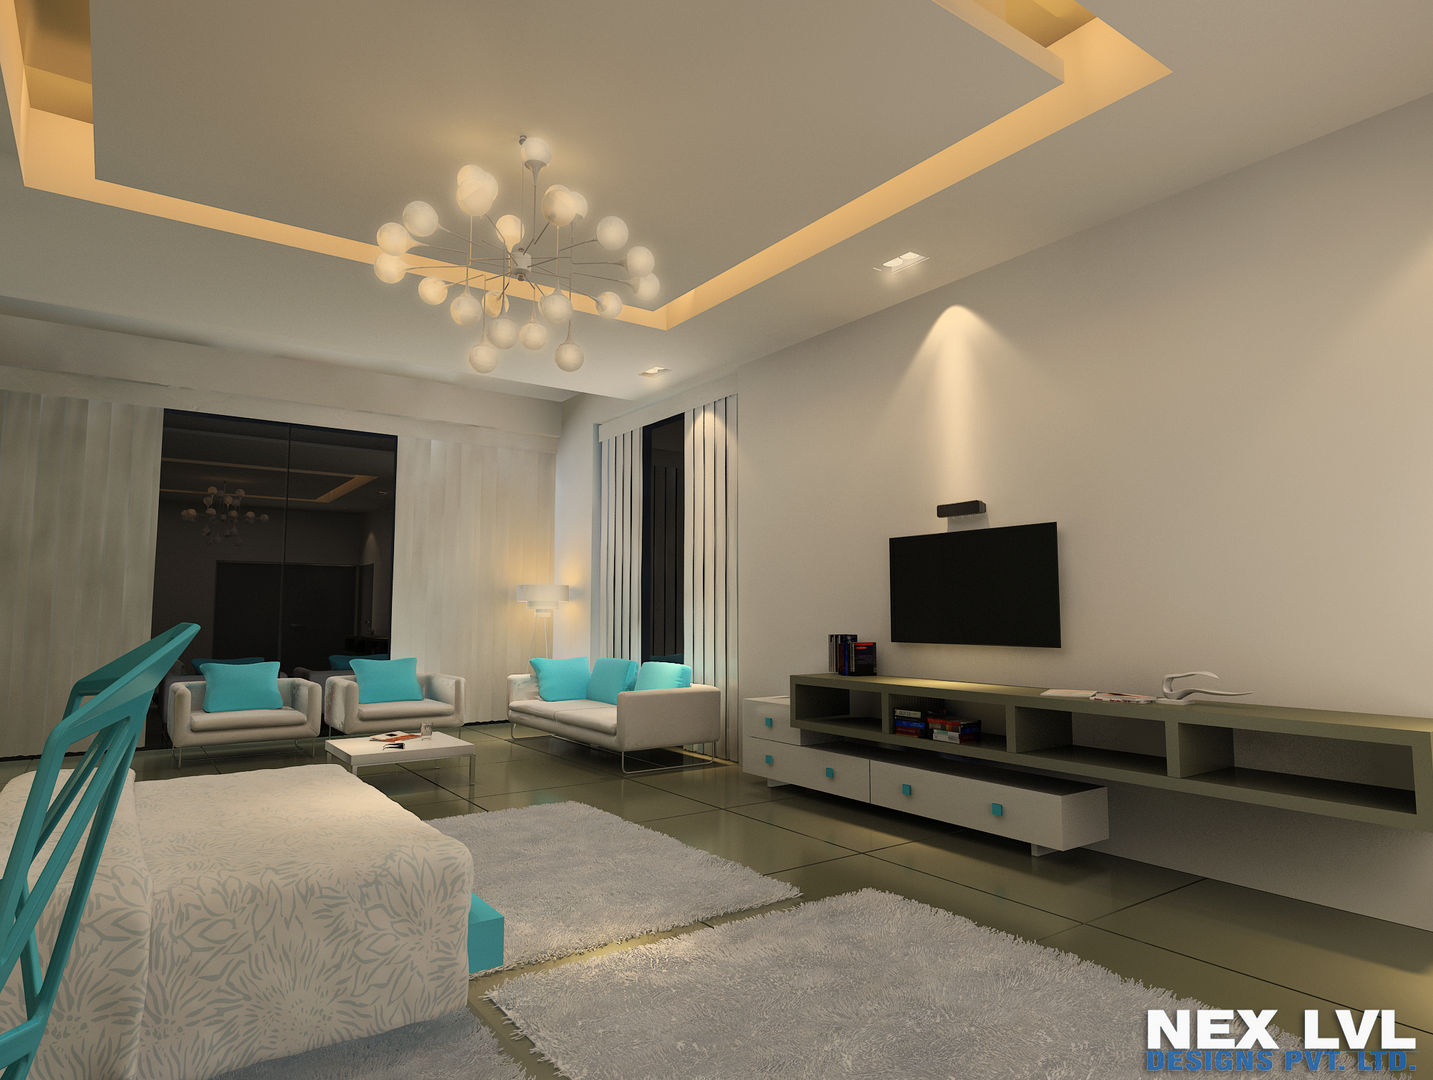 AMBIKAPUR, NEX LVL DESIGNS PVT. LTD. NEX LVL DESIGNS PVT. LTD. Rooms